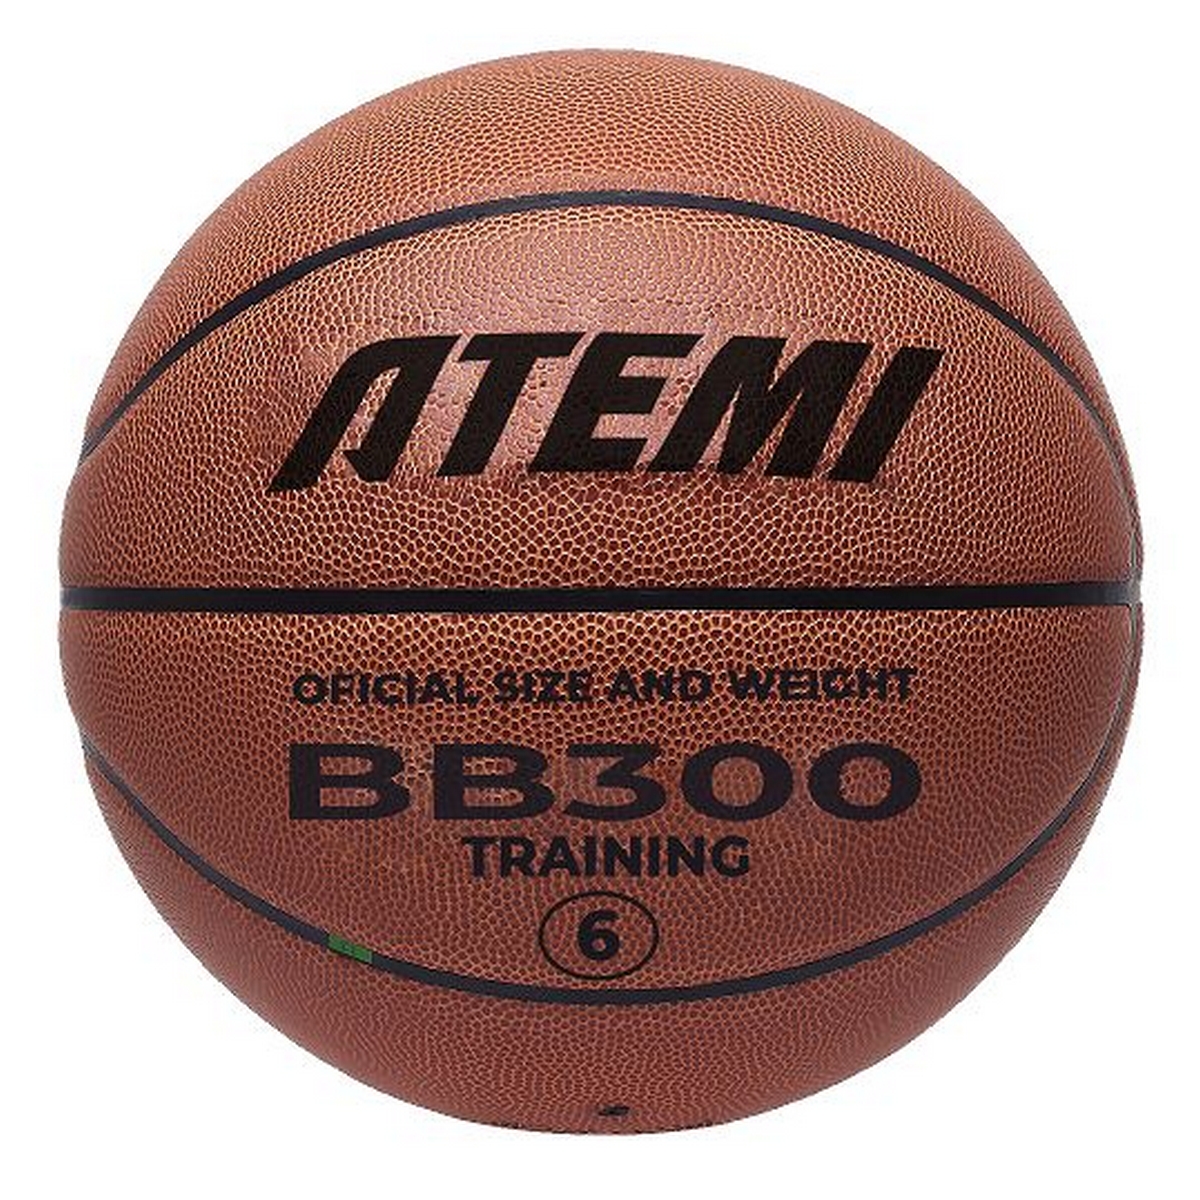 Мяч баскетбольный Atemi BB300N р.6, окруж 72-74